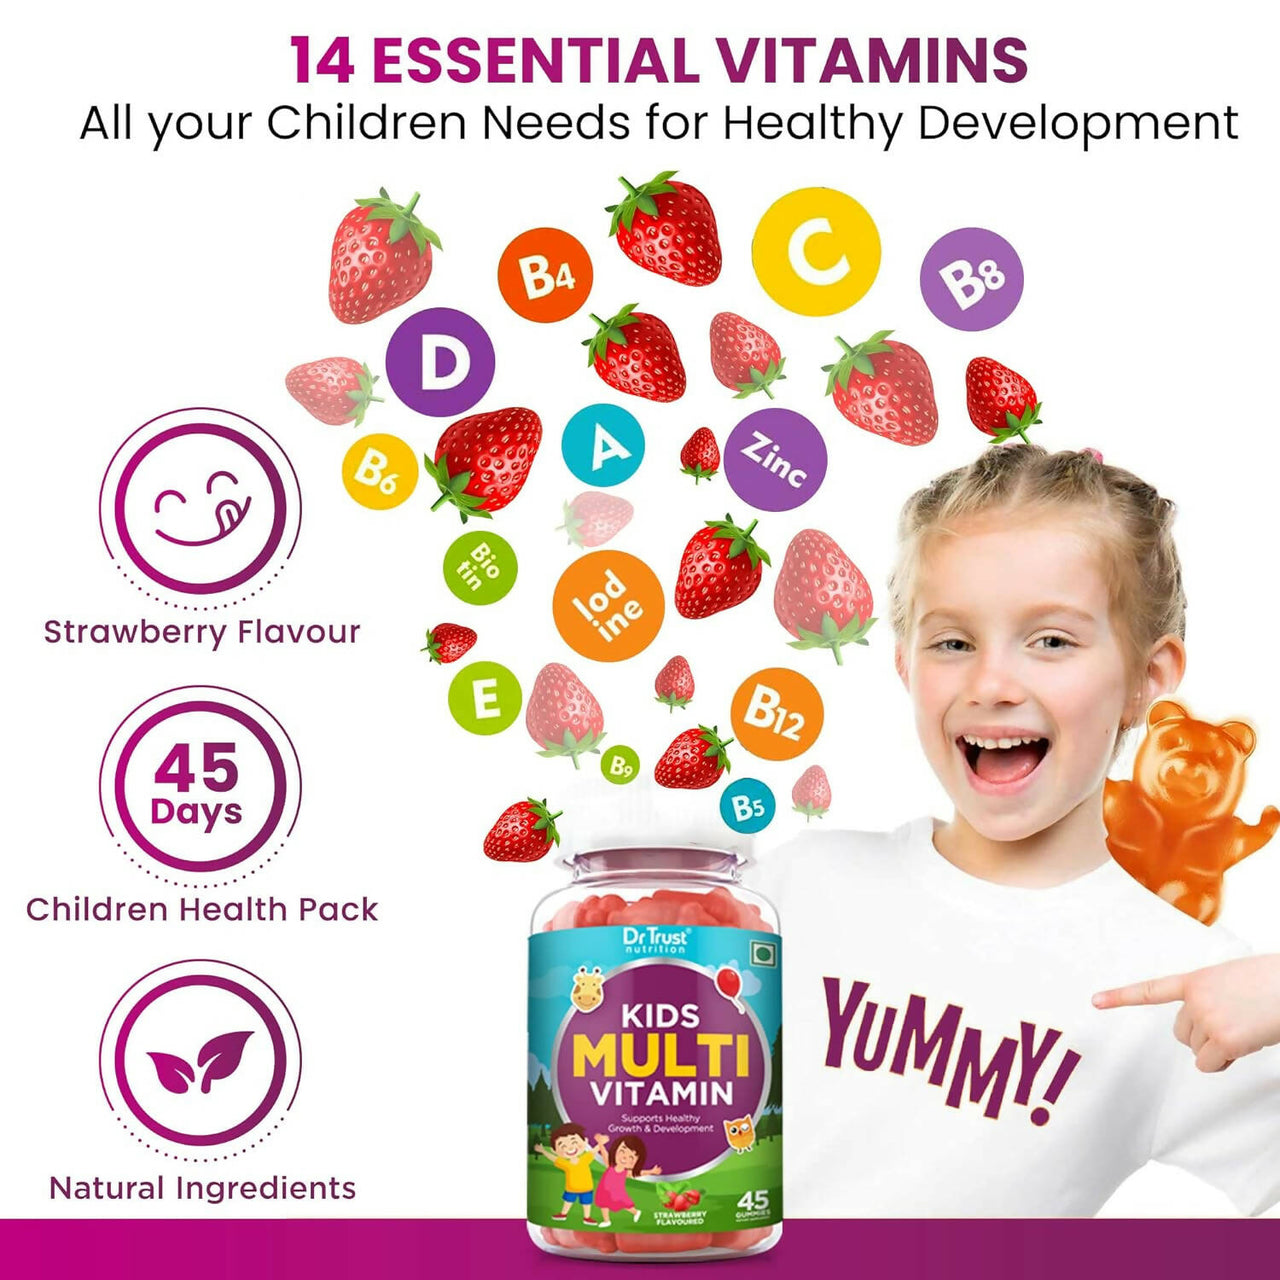 Dr Trust Nutrition Kids Multivitamin Gummies - Strawberry Flavor - Distacart